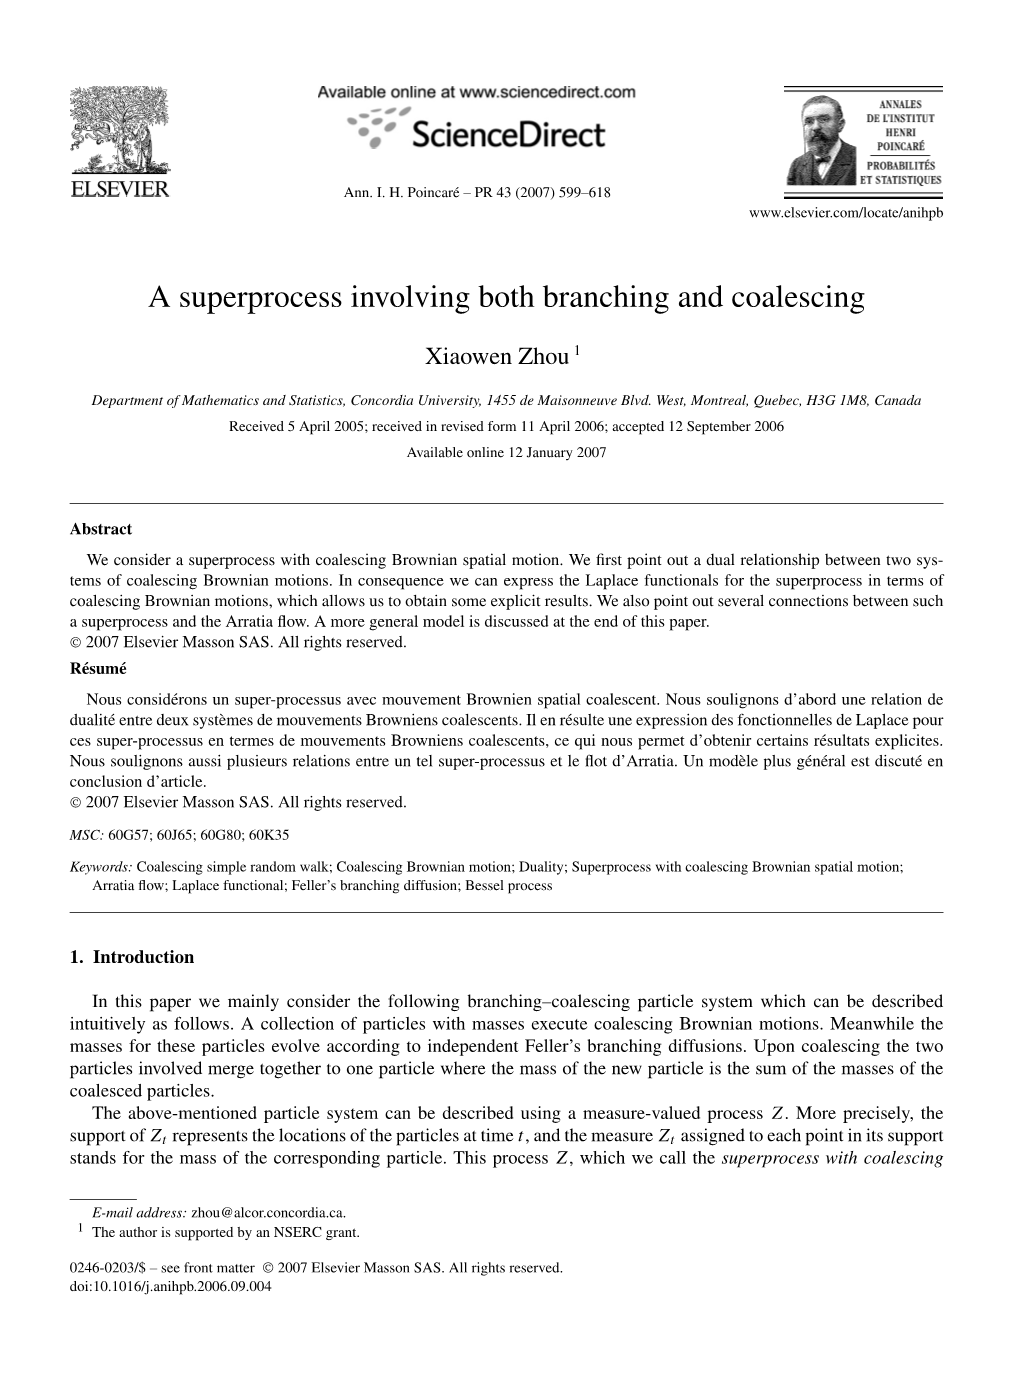 A Superprocess Involving Both Branching and Coalescing